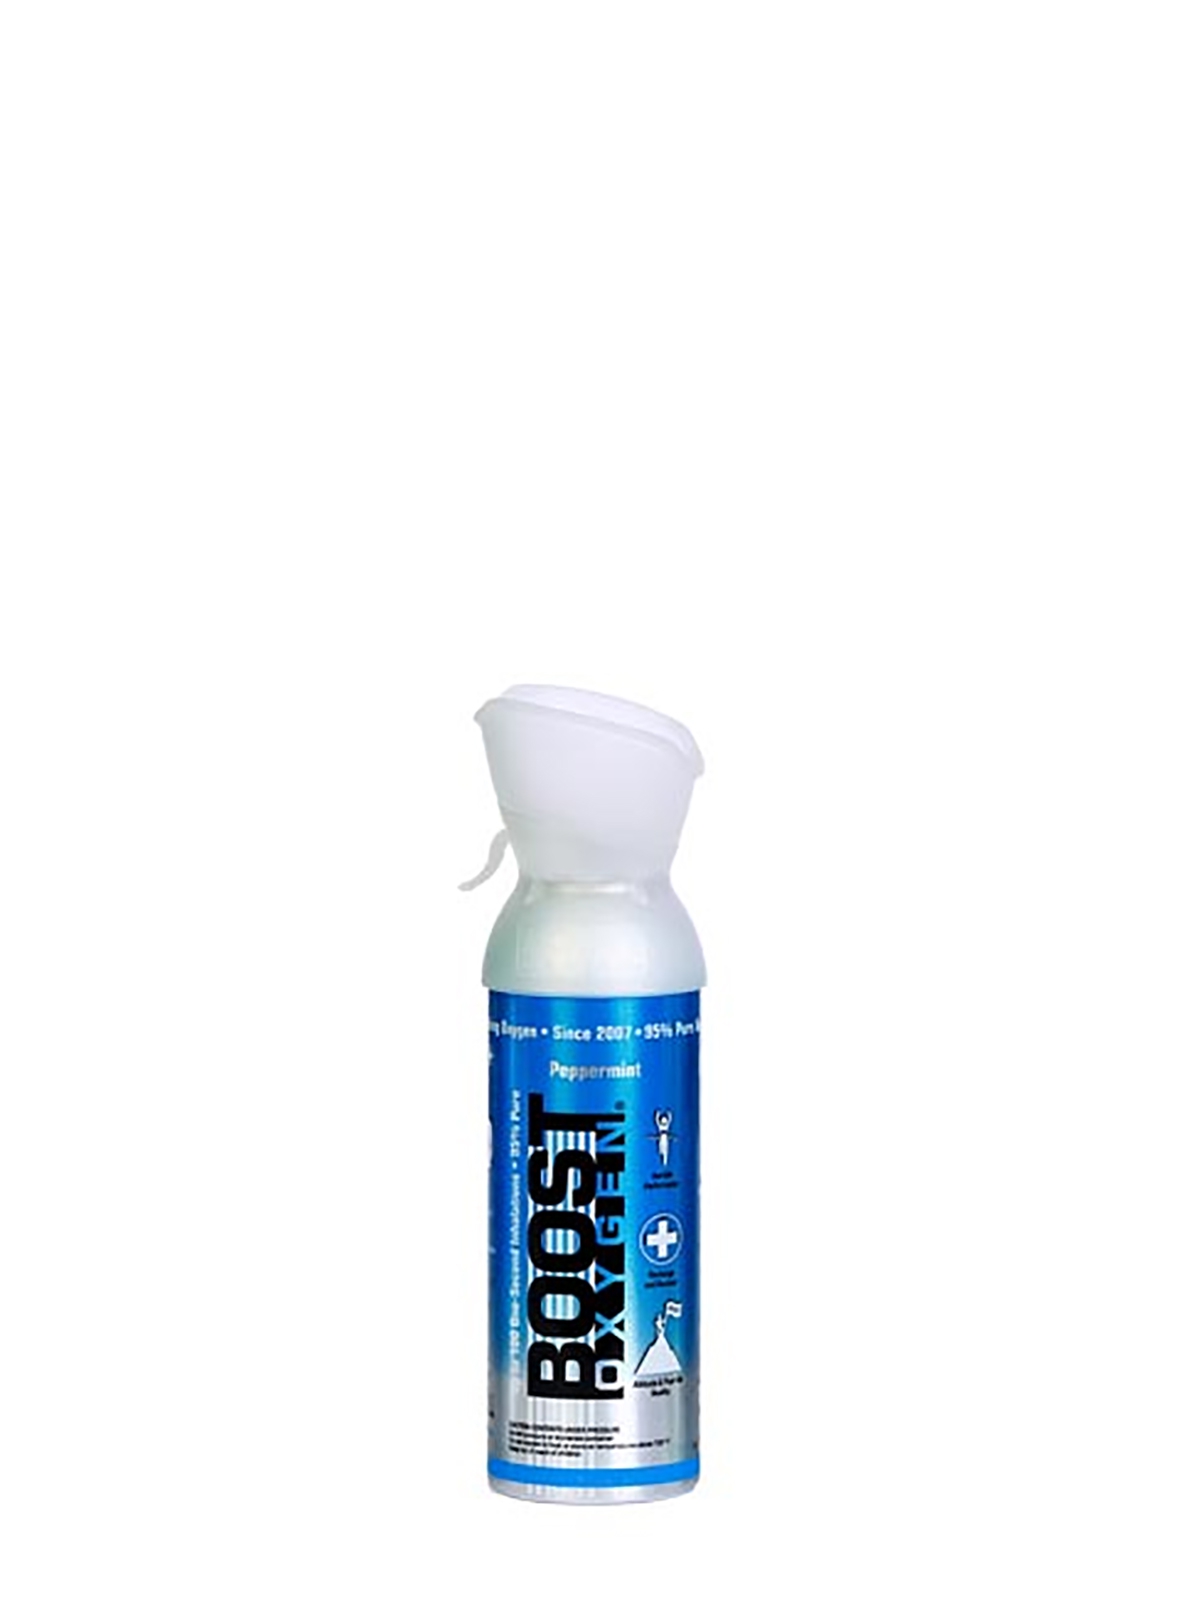 Boost Oxygen Peppermint - 95% reiner Sauerstoff mit Geschmachsaroma, 3 Liter Dose, ca. 60 Boost Oxygen Shots